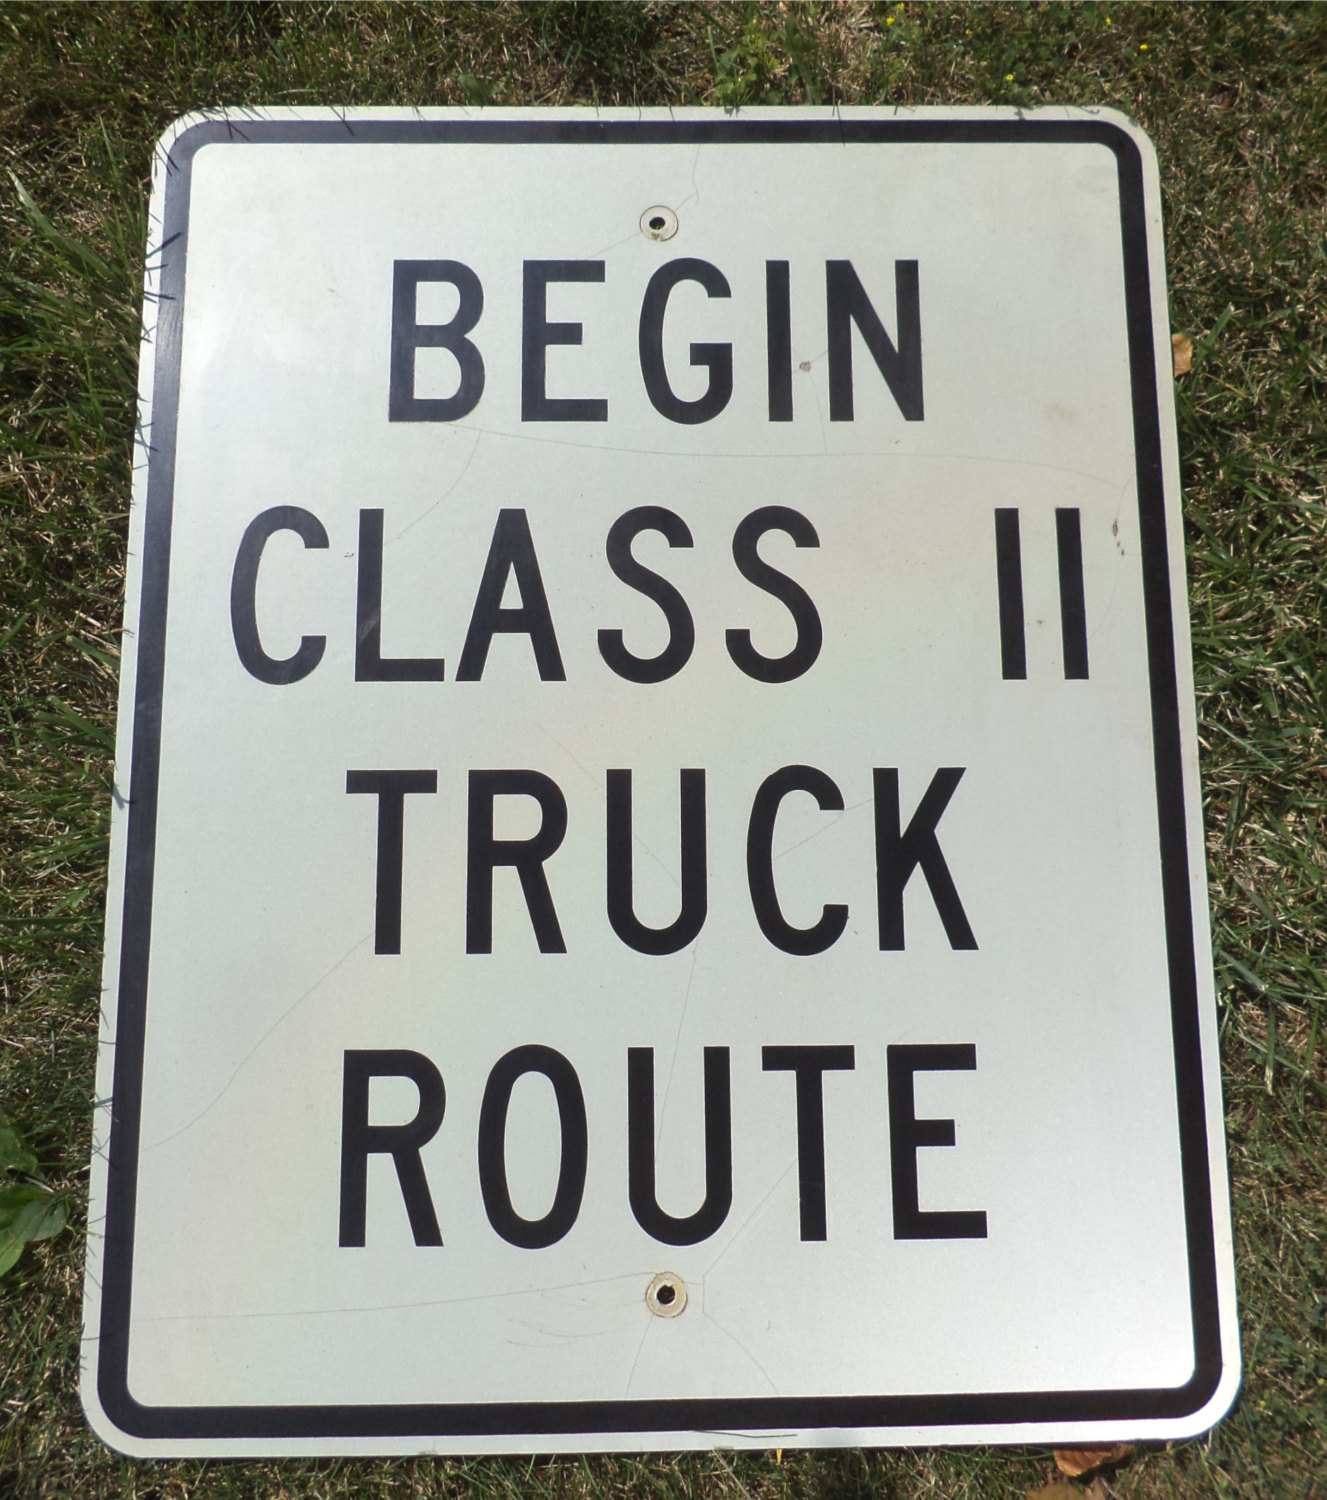 30 x 24 Begin Class II Trick Route Metal Street Sign Highway